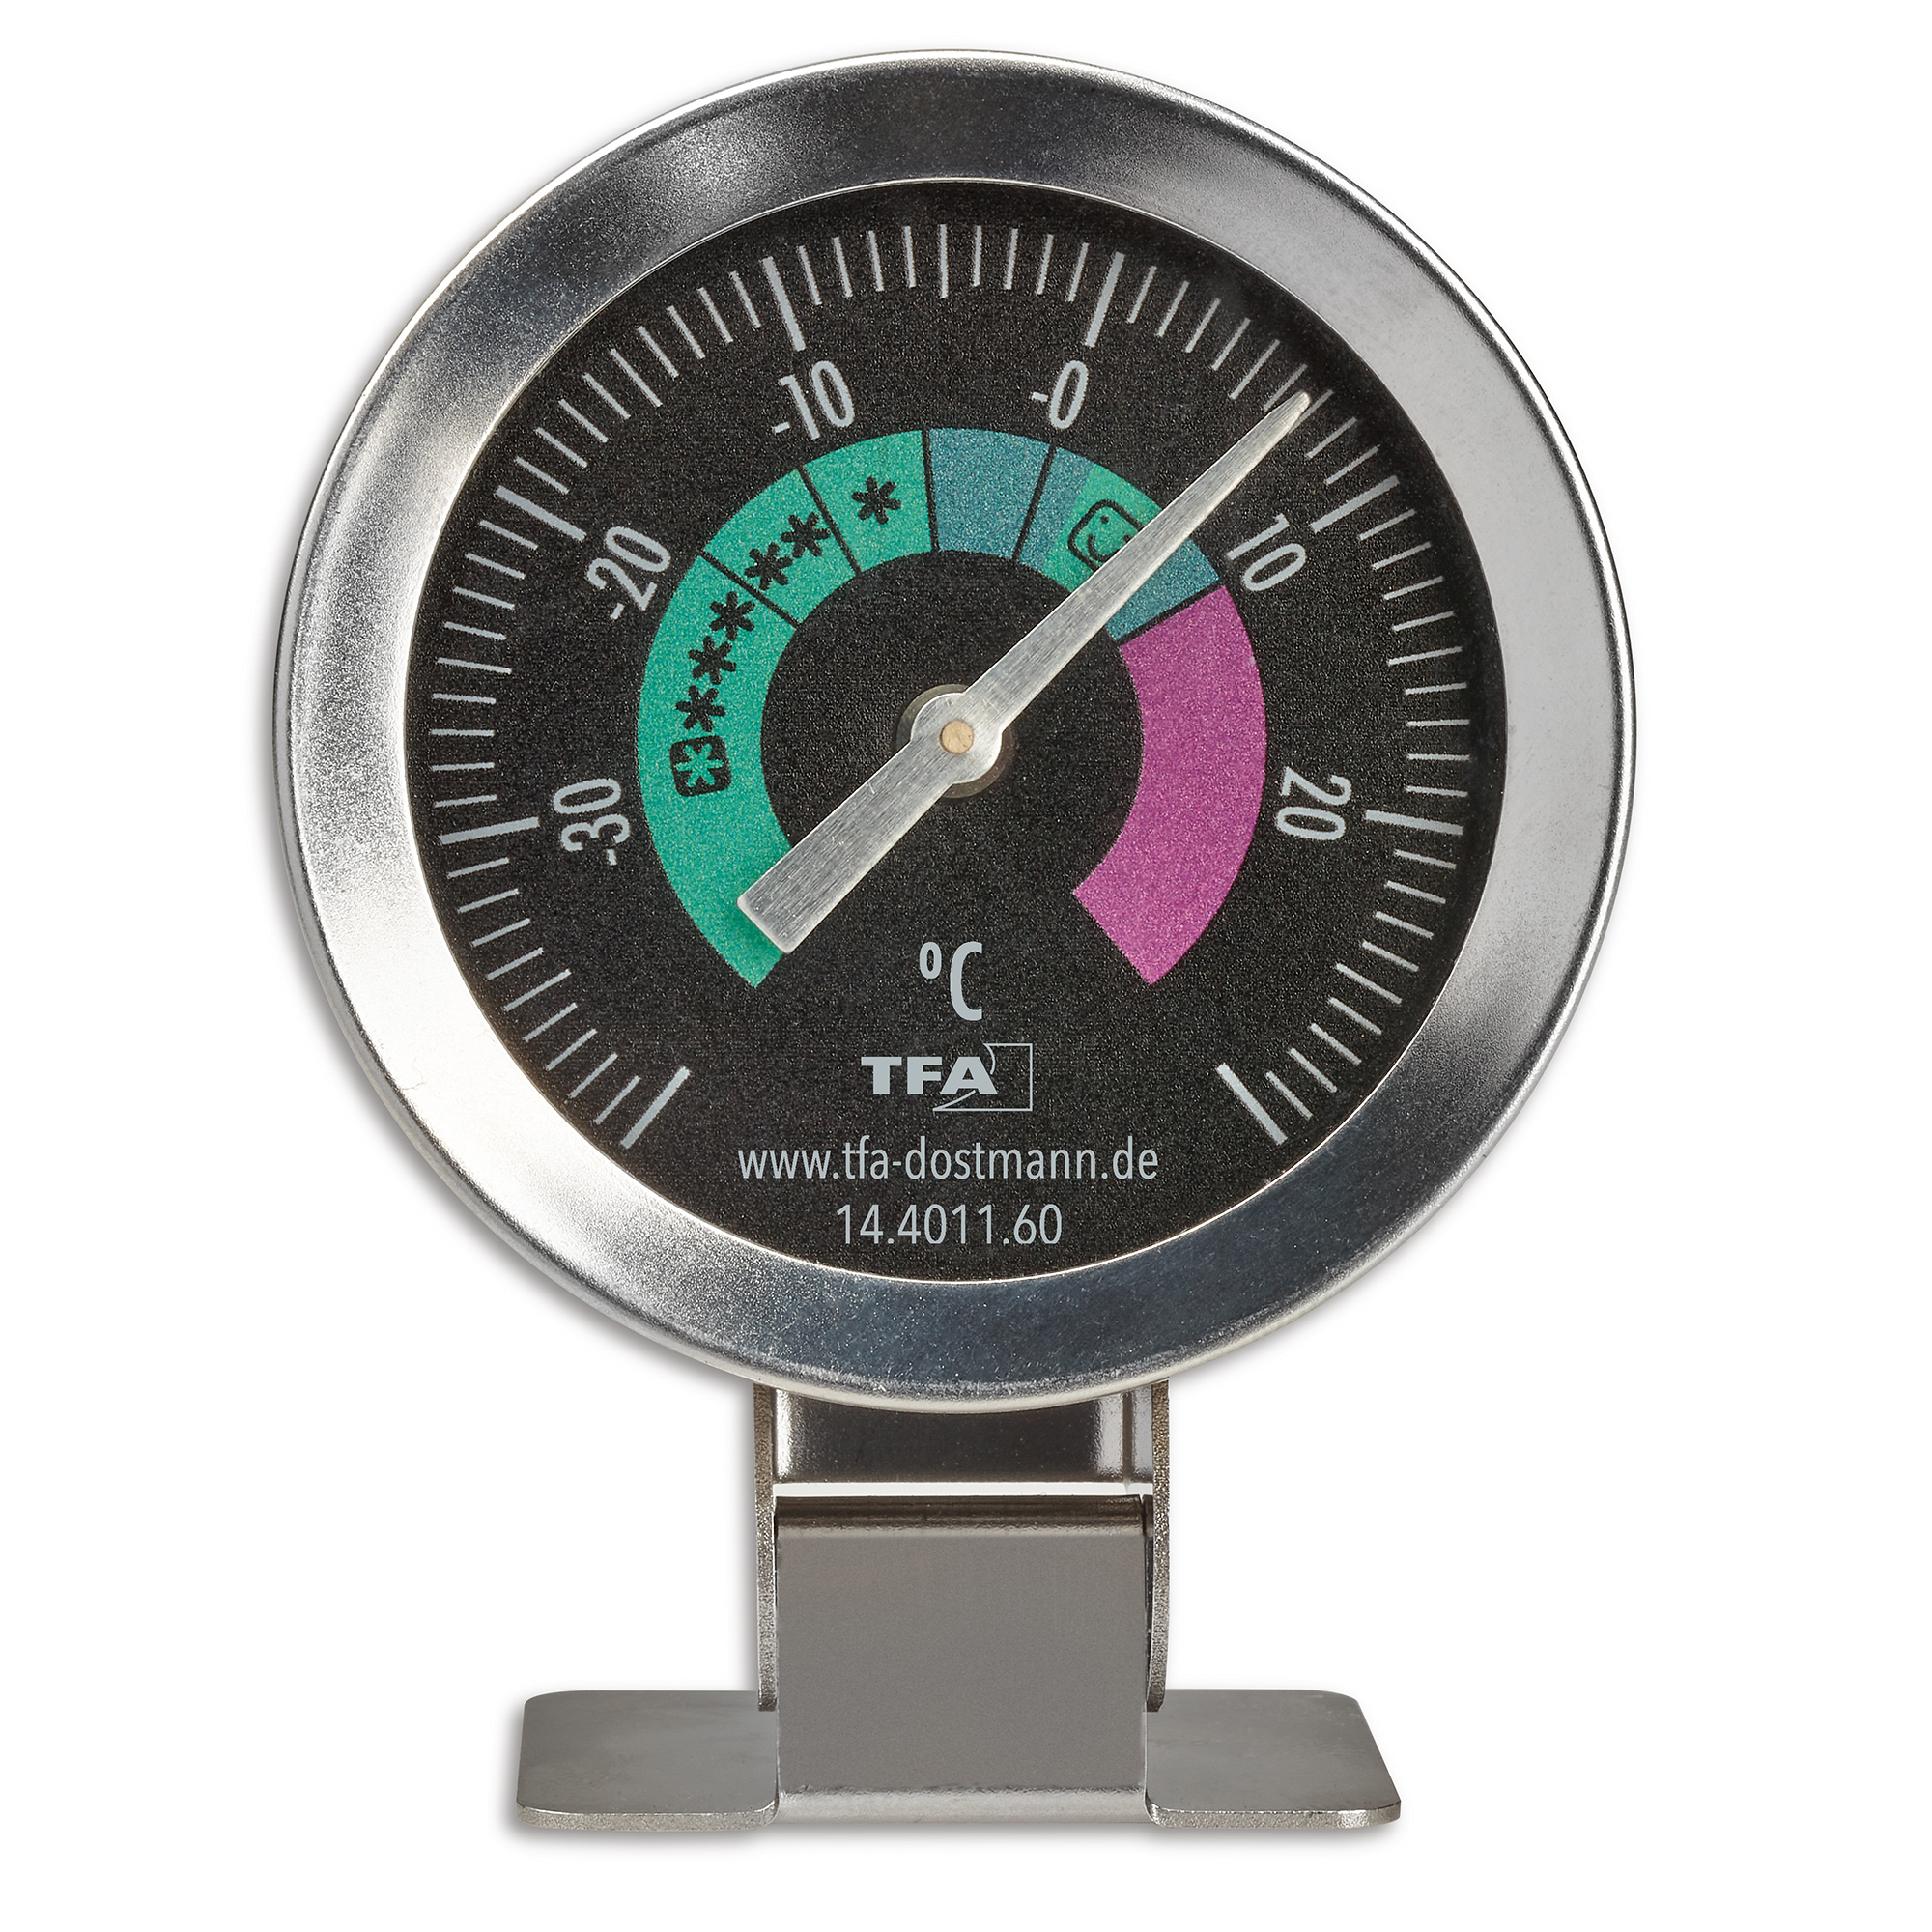 zur Kontrolle NEU OVP handlich klein TFA Dostmann Analoges Kühlthermometer 